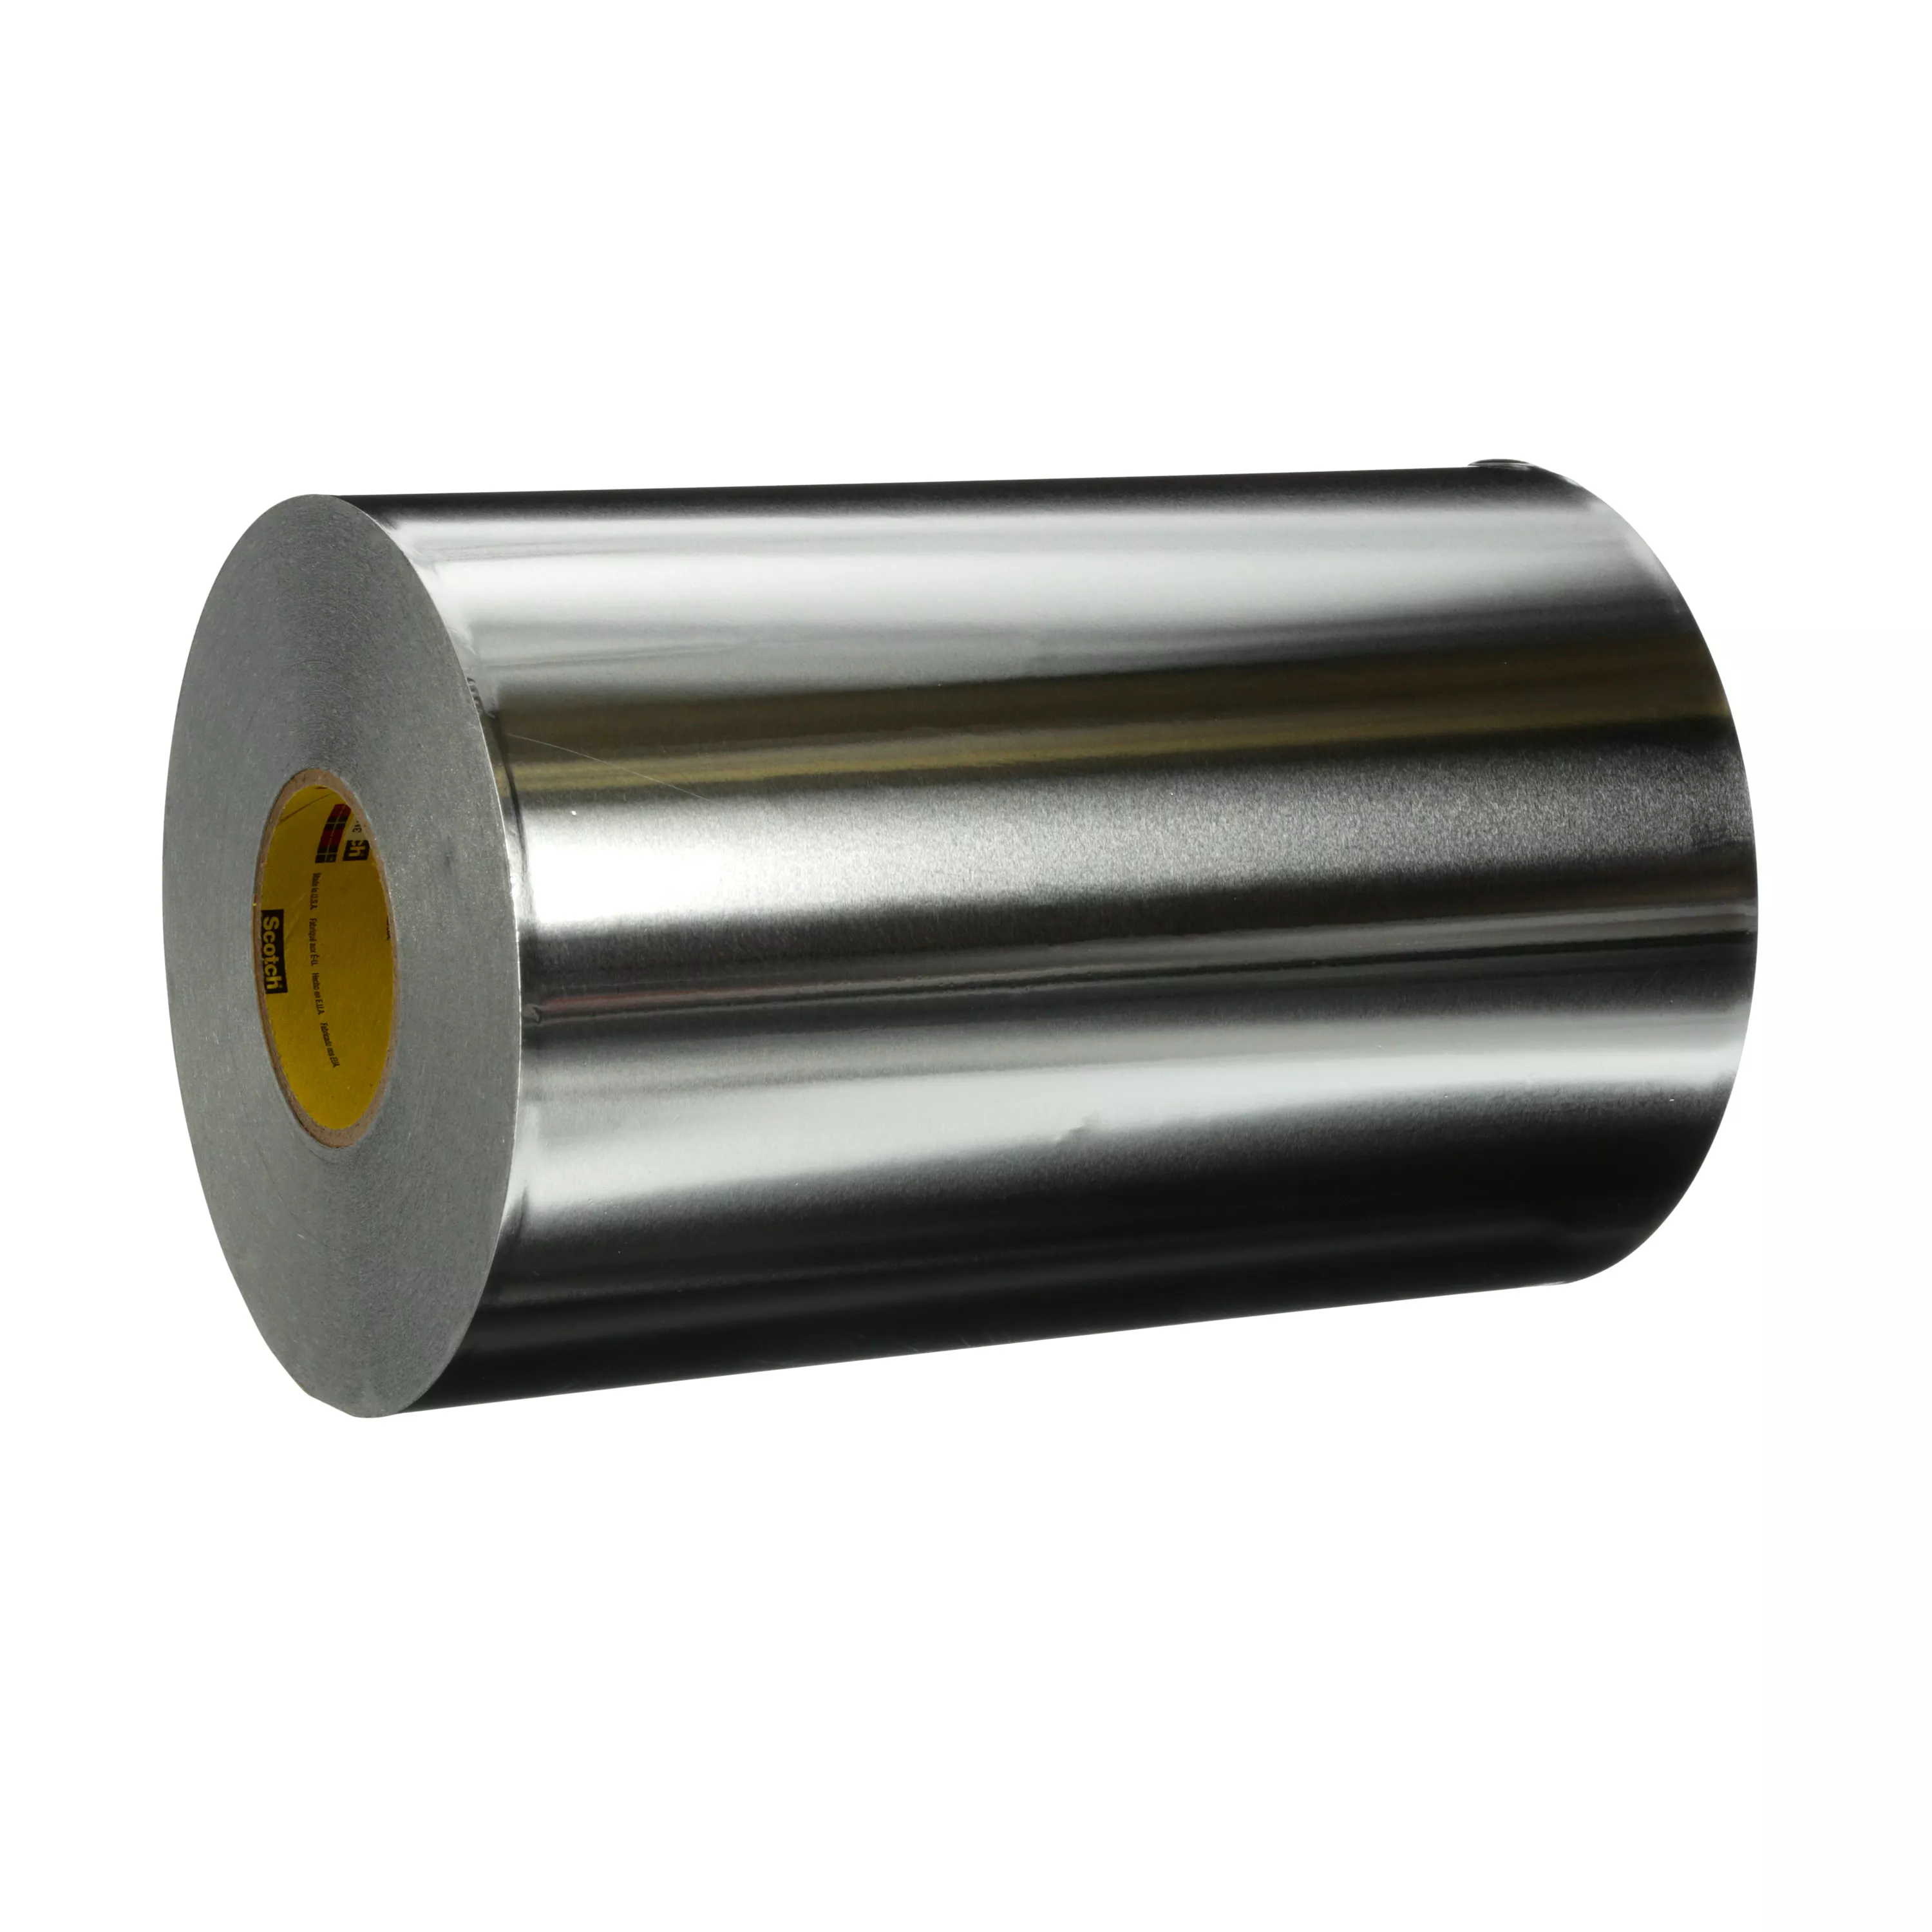 3M™ High Temperature Aluminum Foil Tape 433L, Silver, 7 2/3 in x 180 yd,
3.5 mil, 1 roll per case